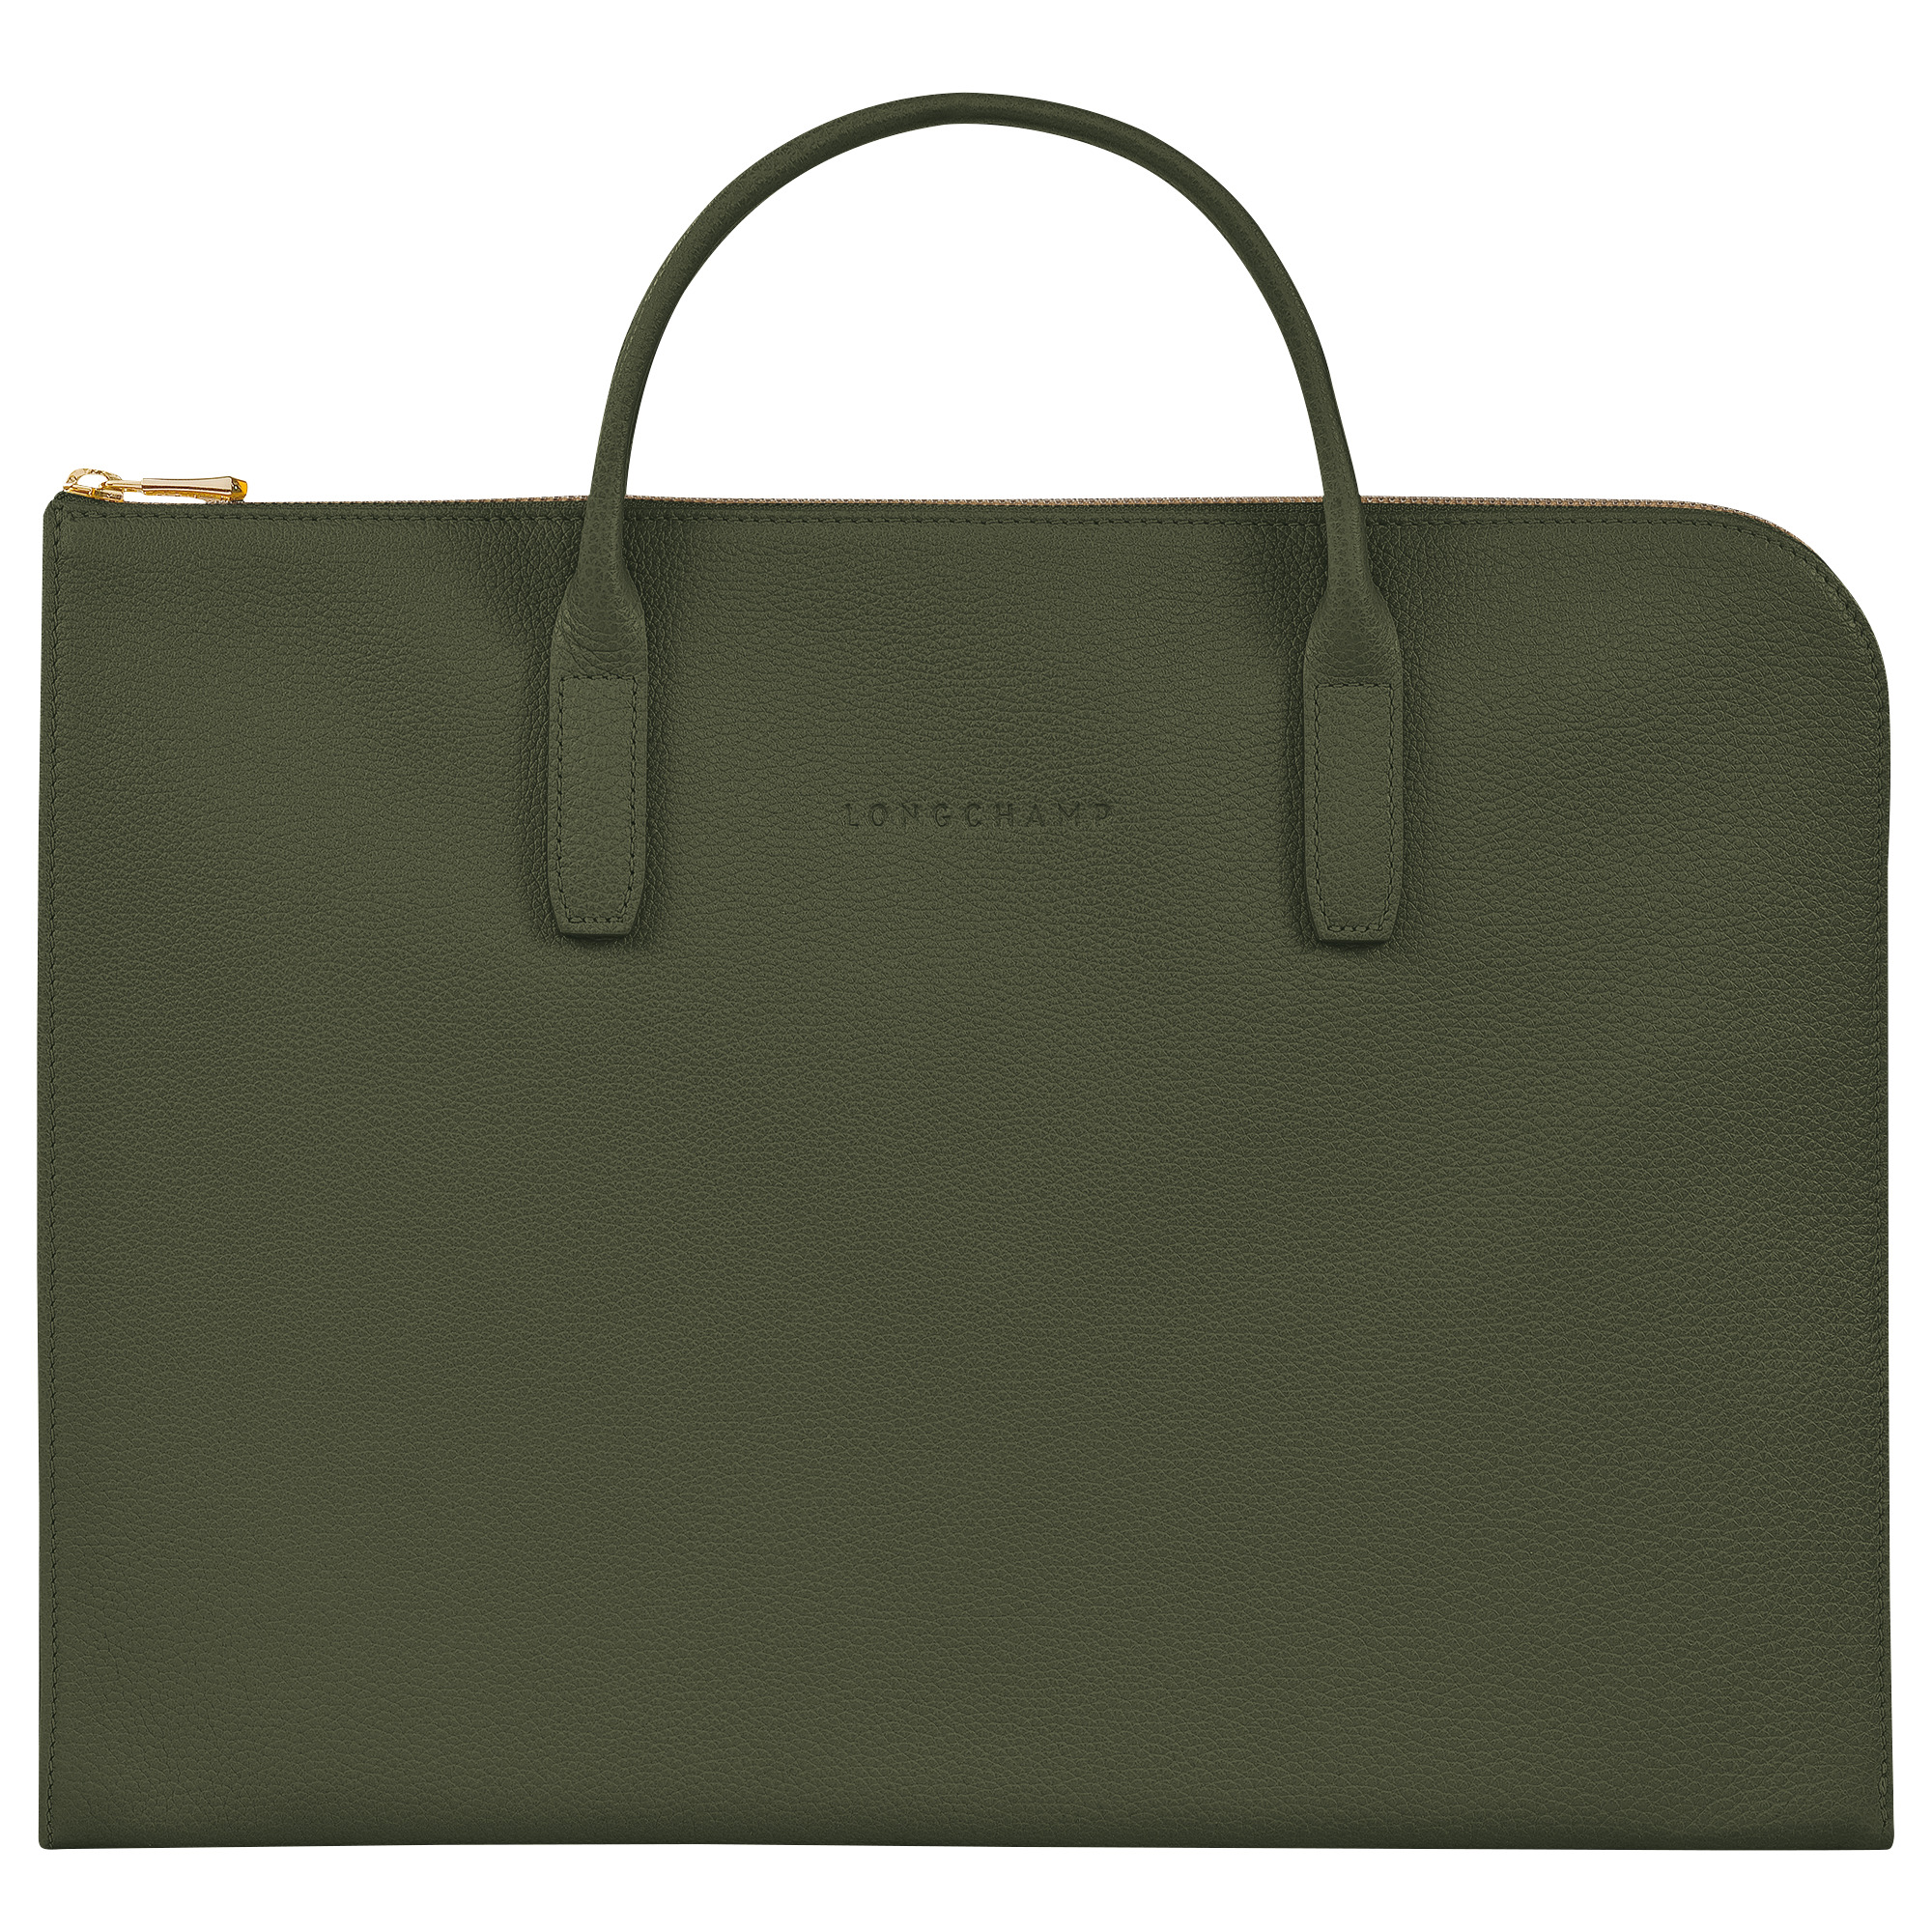 Le Foulonné S Briefcase Khaki - Leather - 1